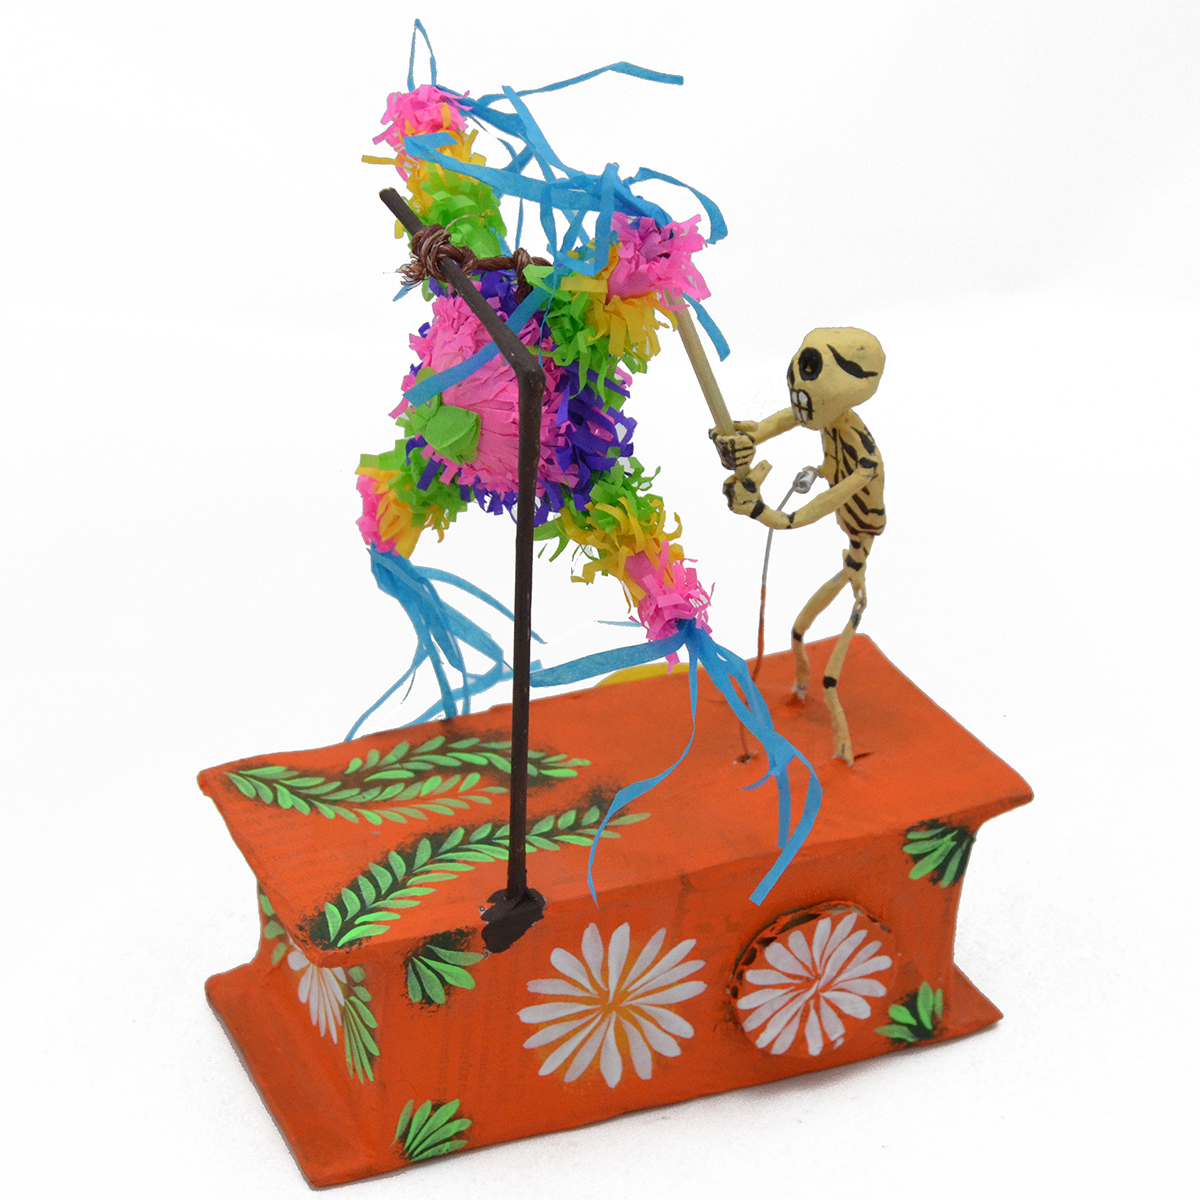 Cartoneria (Mexican Paper Mache) Josue Eleazar Castro: Piñata cartoneria